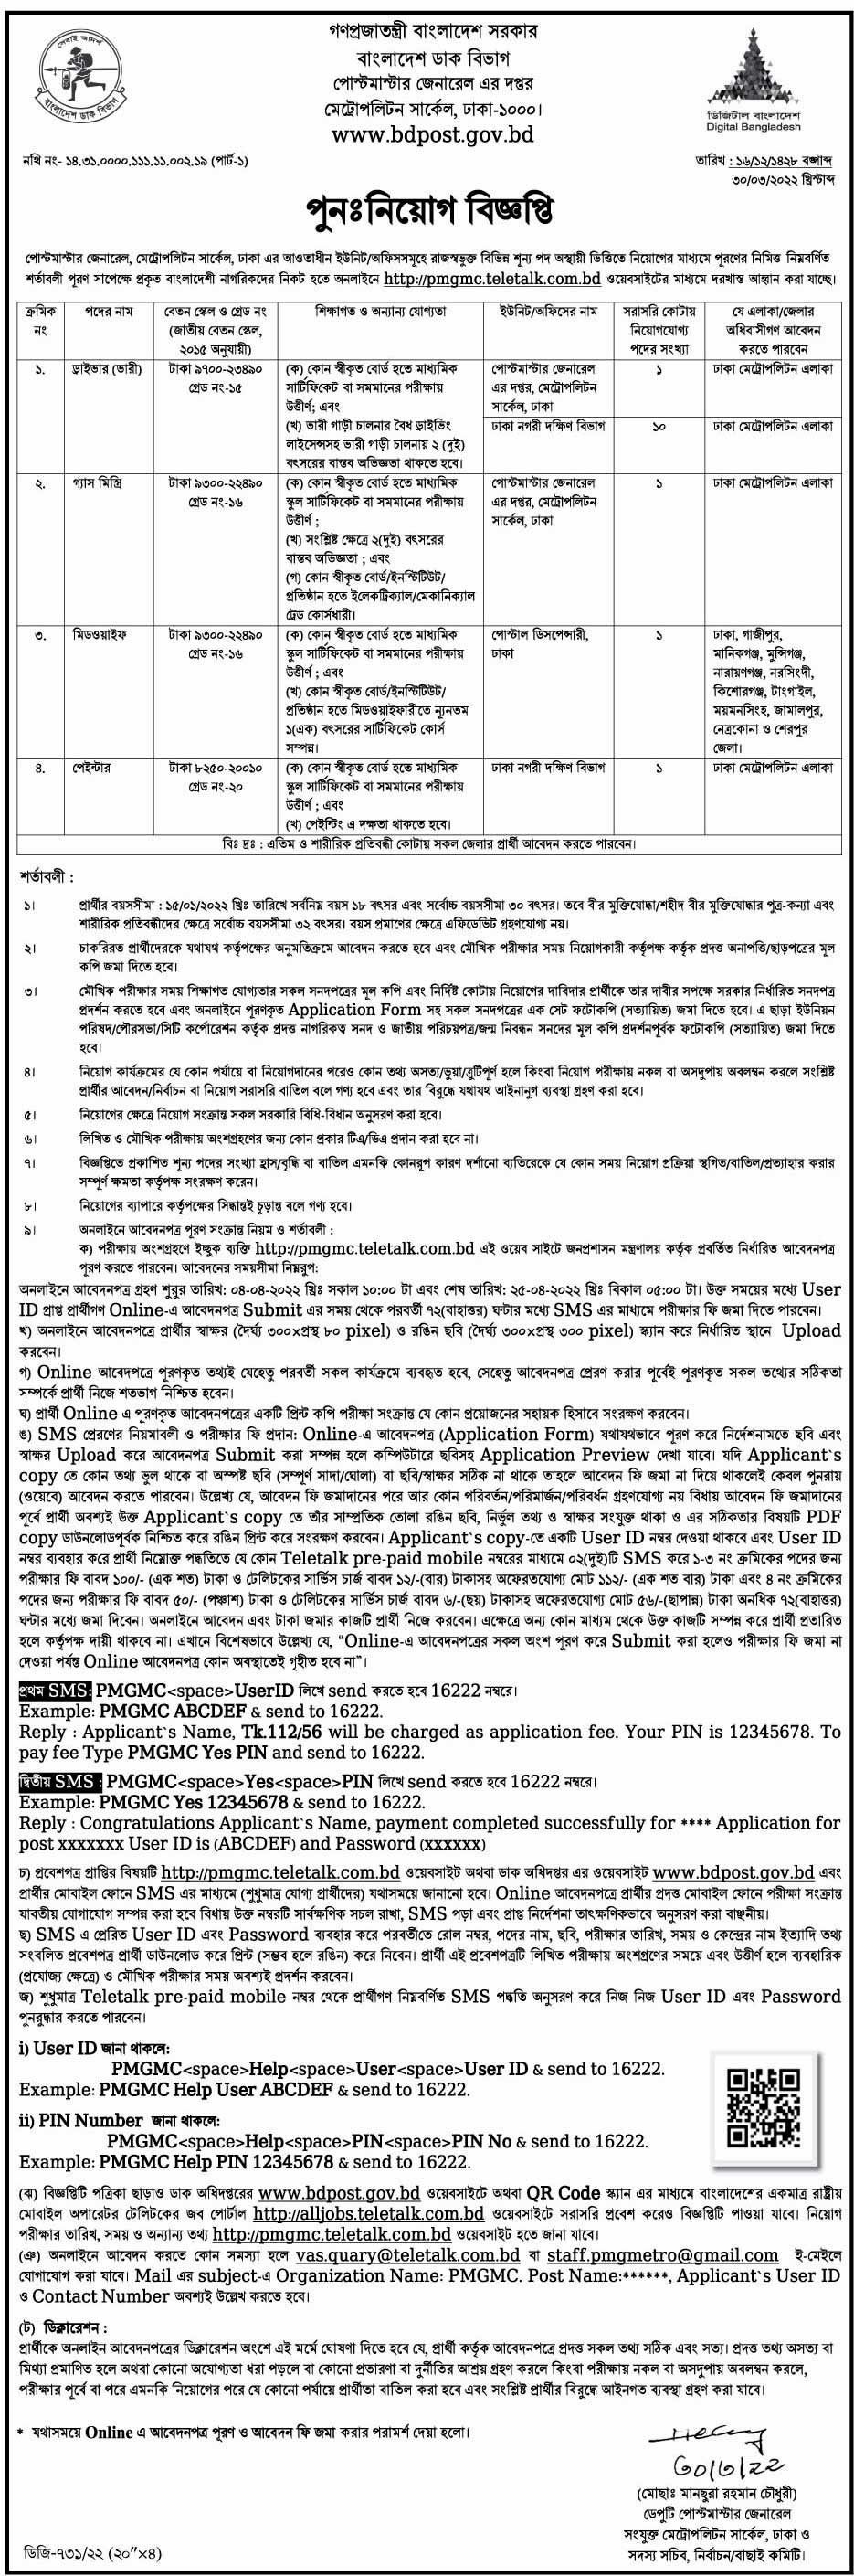 Bangladesh Post Office Job Circular 2022 Vacancy 175 